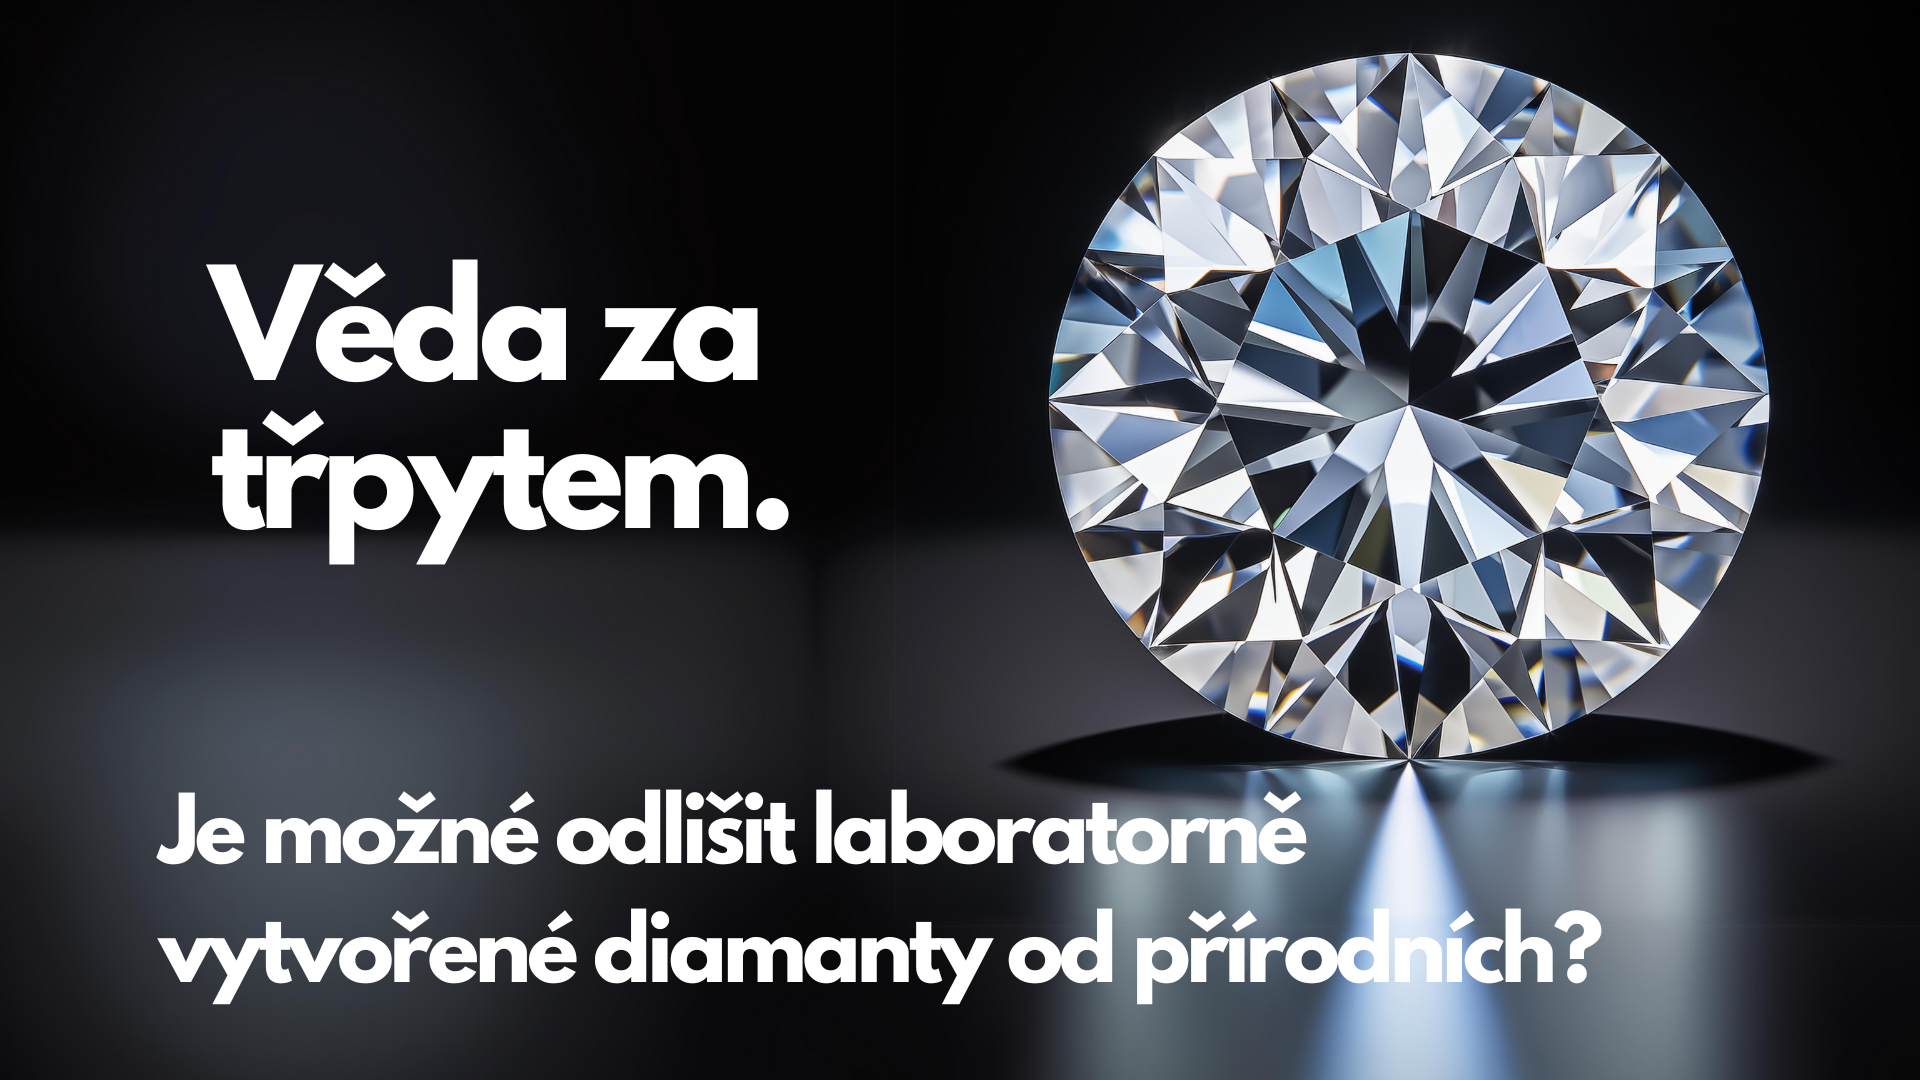 Je možné odlišit laboratorně vytvořené diamanty od přírodních?